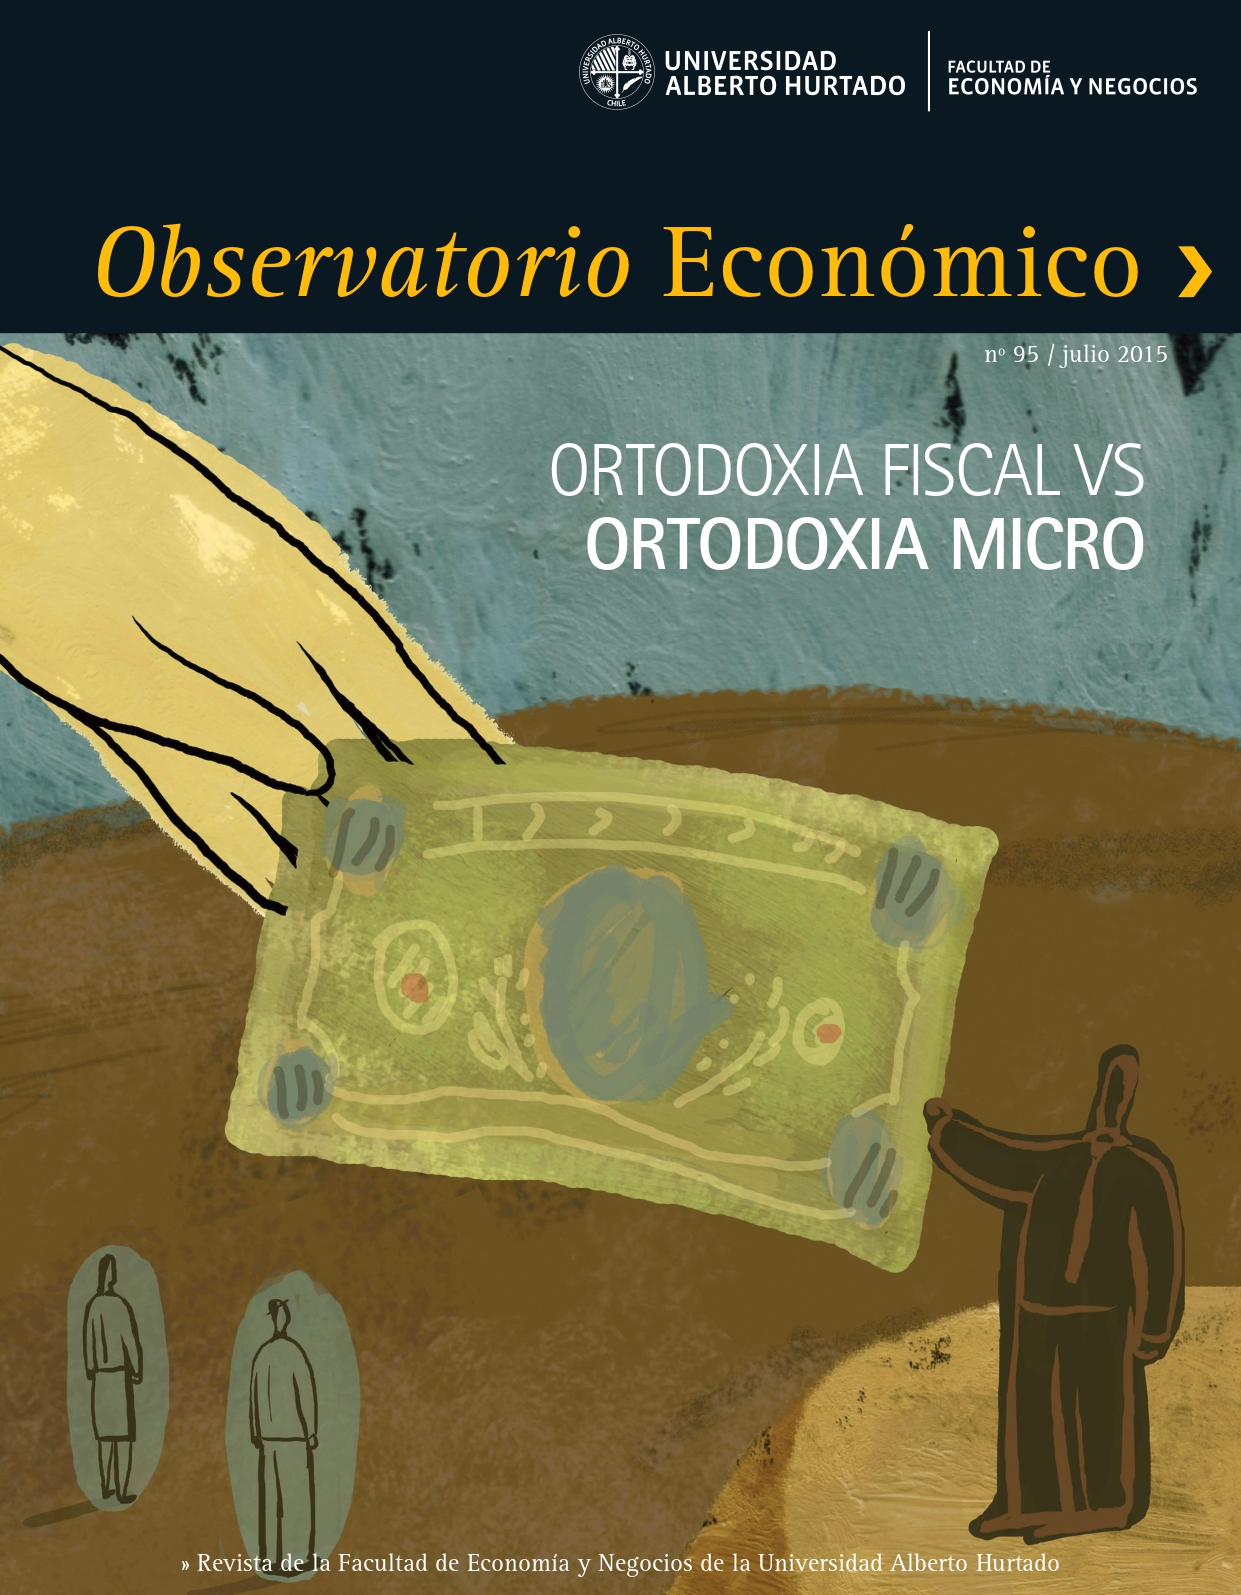 TÃ­tulo del nÃºmero de la revista : "Ortodoxia Fiscal vs Ortodoxia Micro"